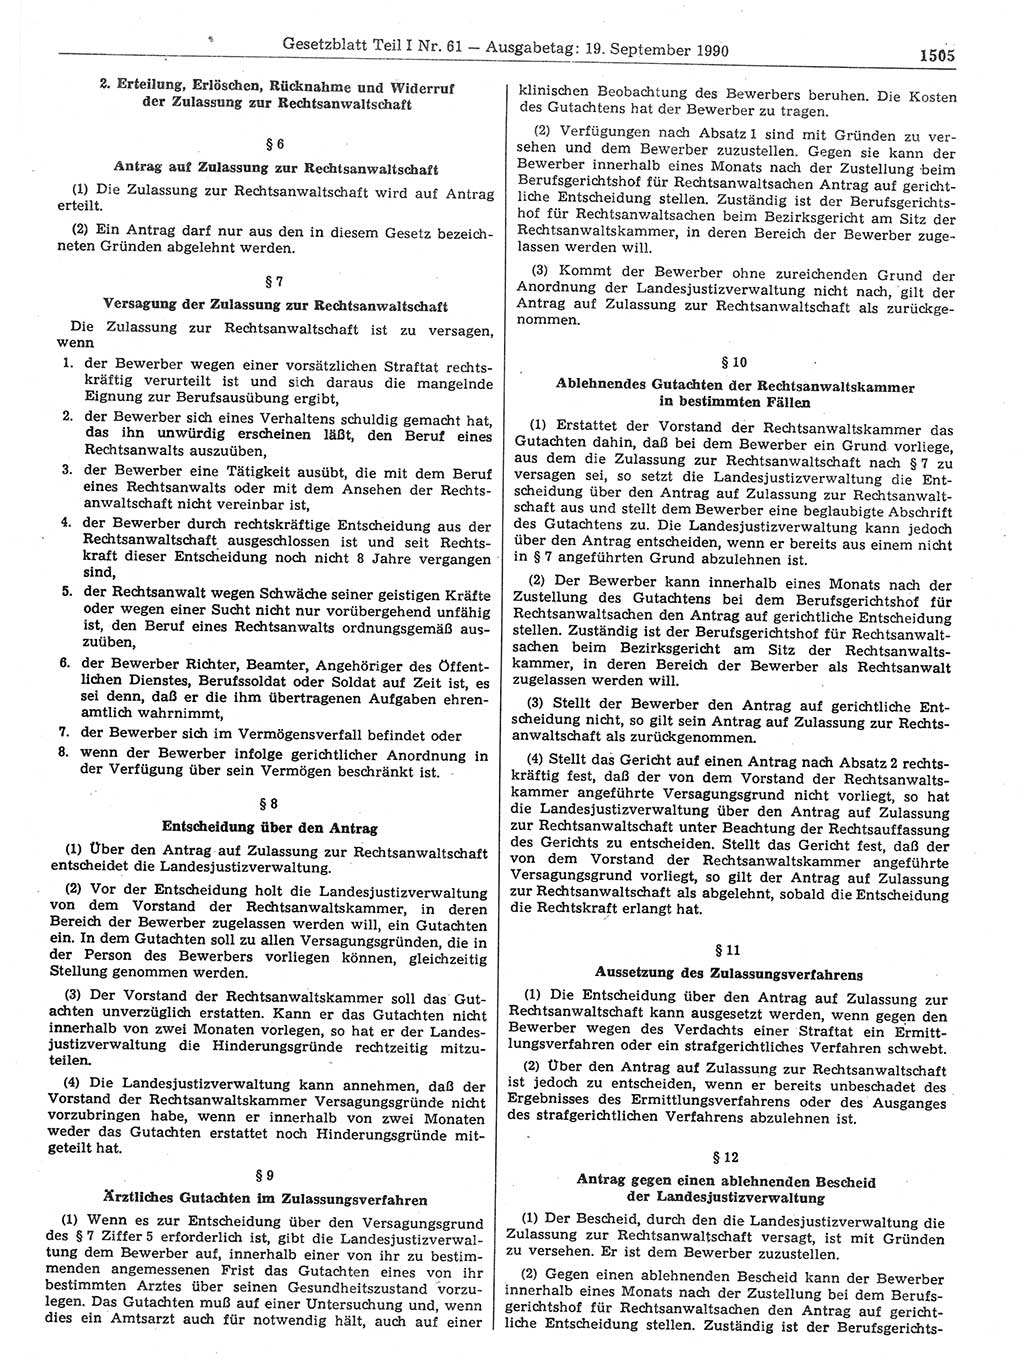 Gesetzblatt (GBl.) der Deutschen Demokratischen Republik (DDR) Teil Ⅰ 1990, Seite 1505 (GBl. DDR Ⅰ 1990, S. 1505)